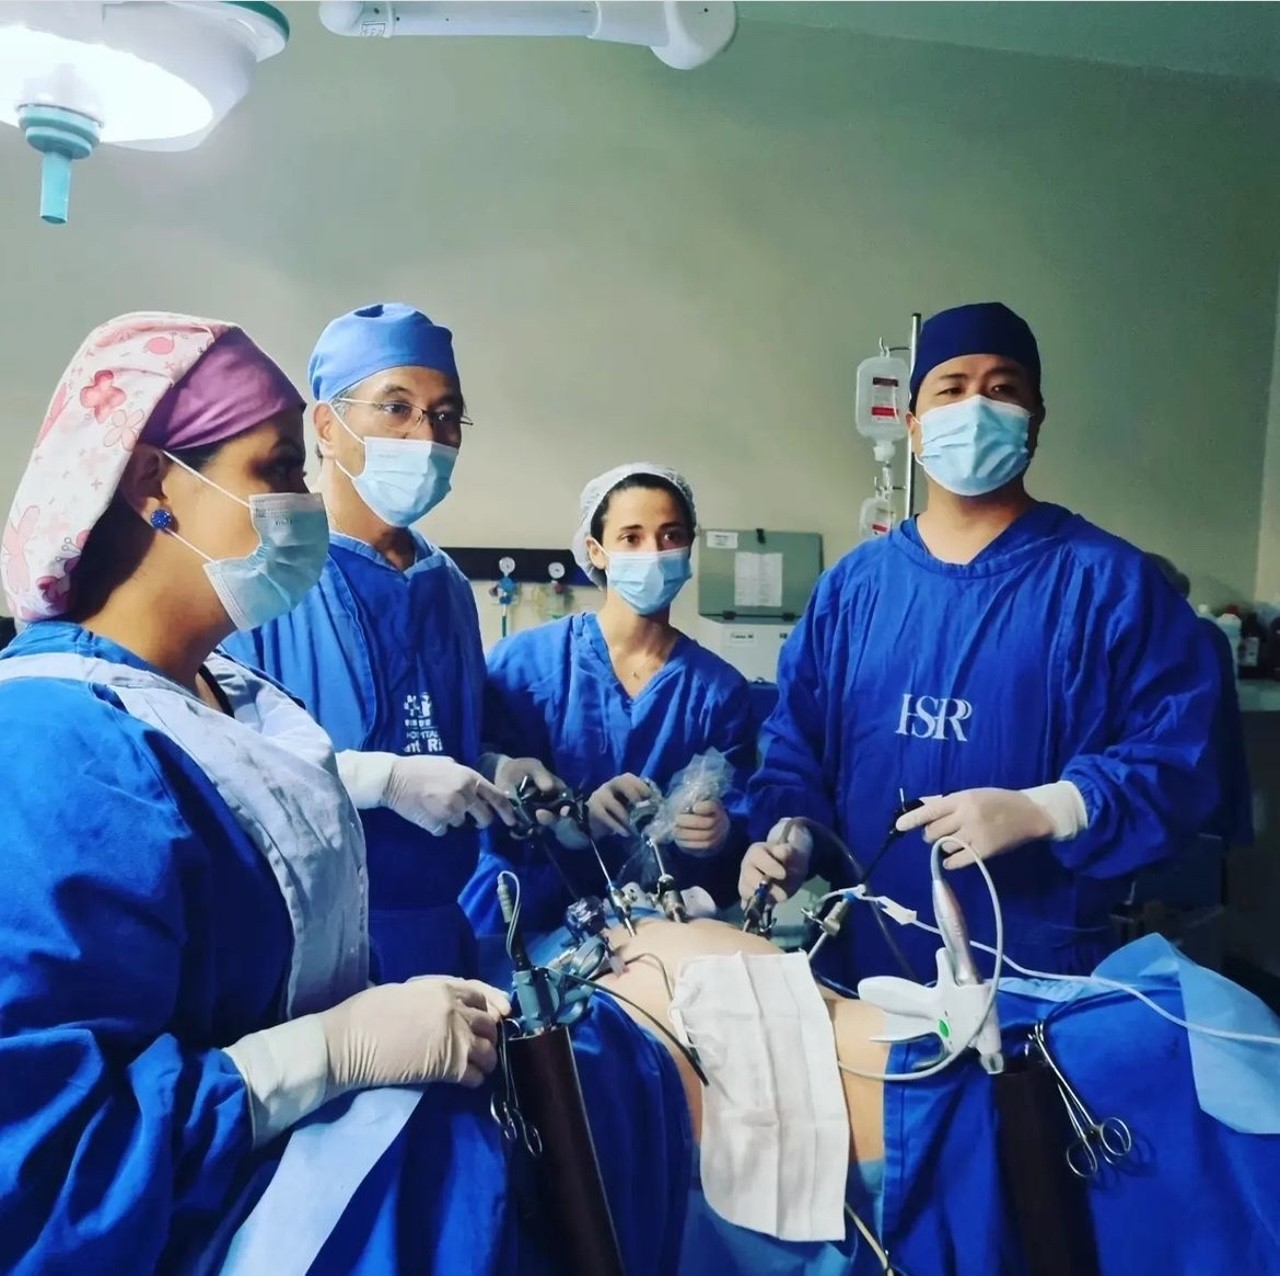 O médico Guilherme Shiraishi e sua equipe durante procedimento (Foto Assessoria)